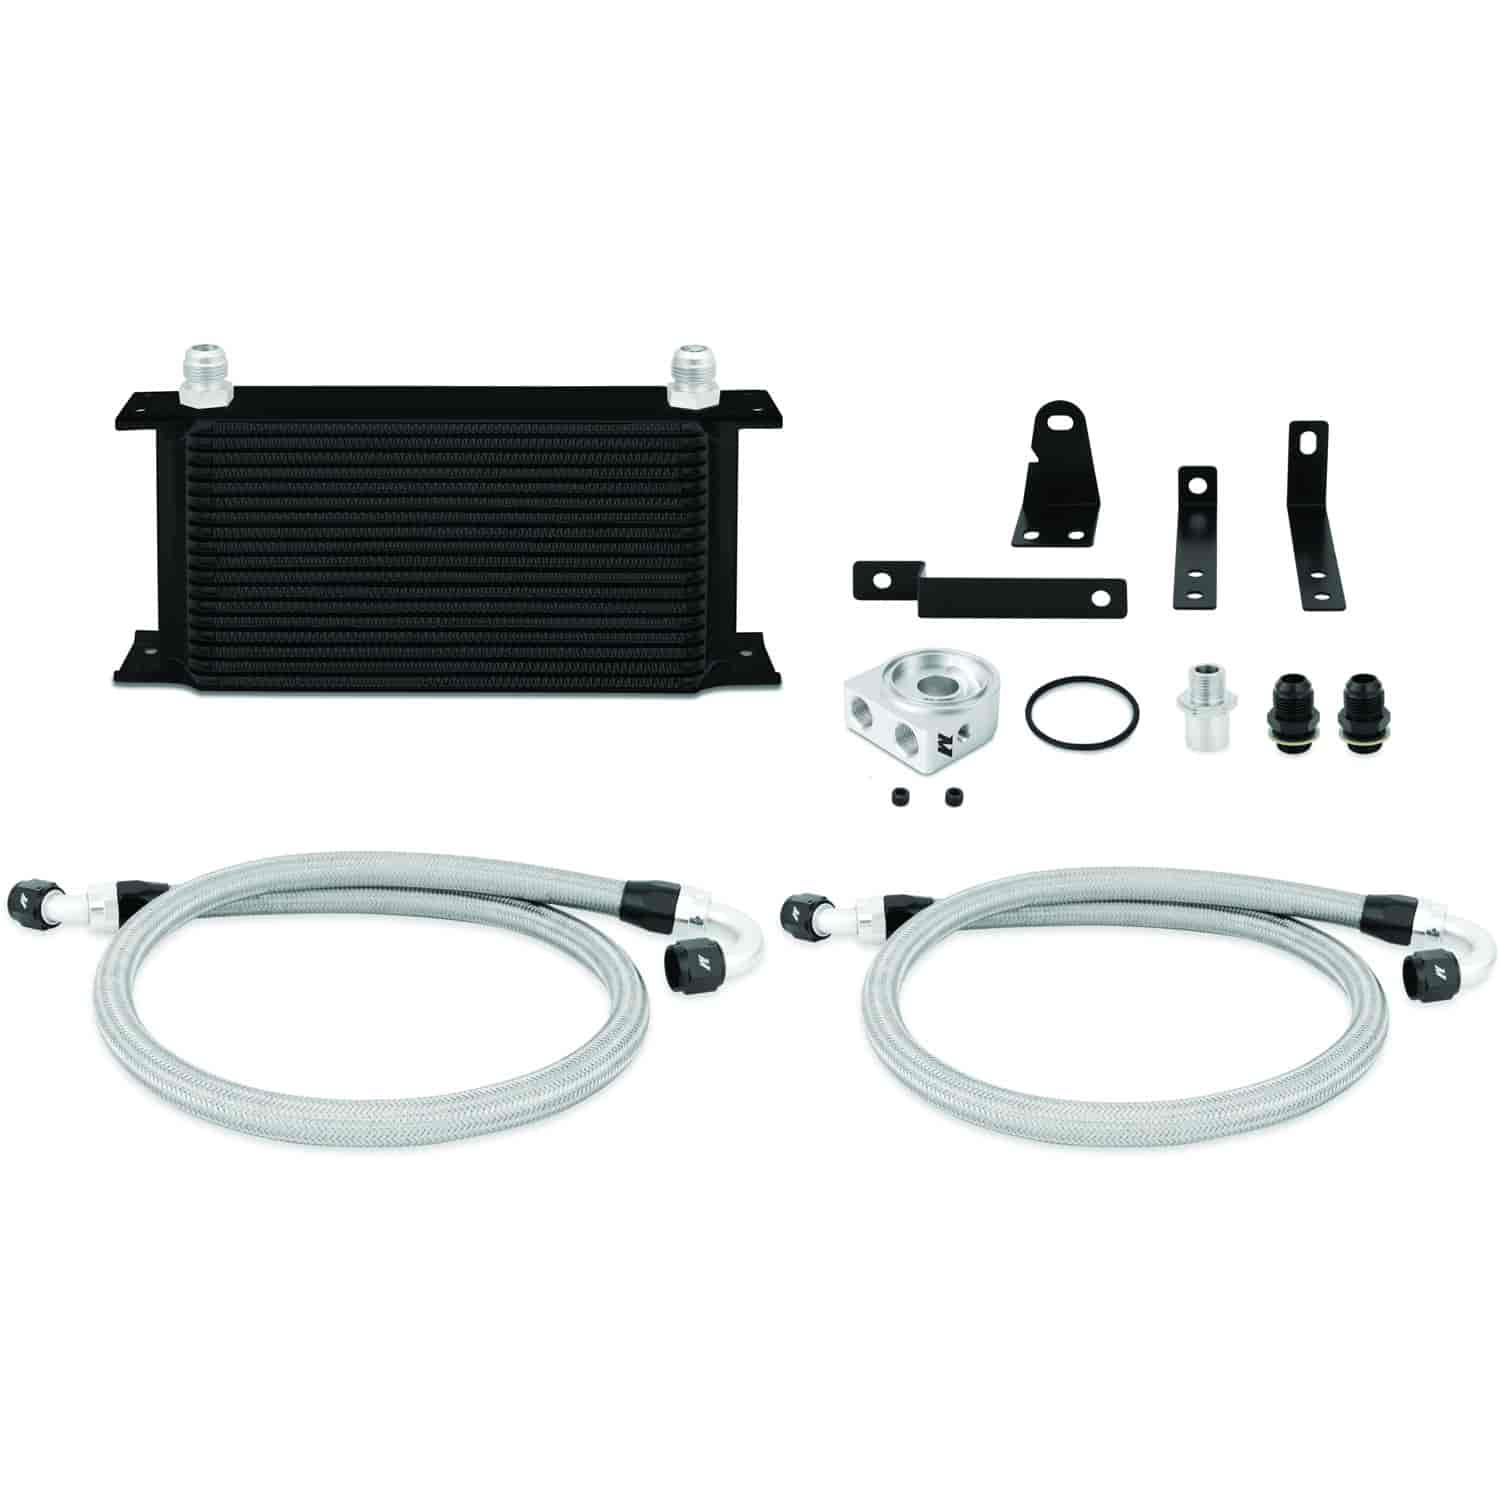 Honda S2000 Oil Cooler Kit Black - MFG Part No. MMOC-S2K-00BK